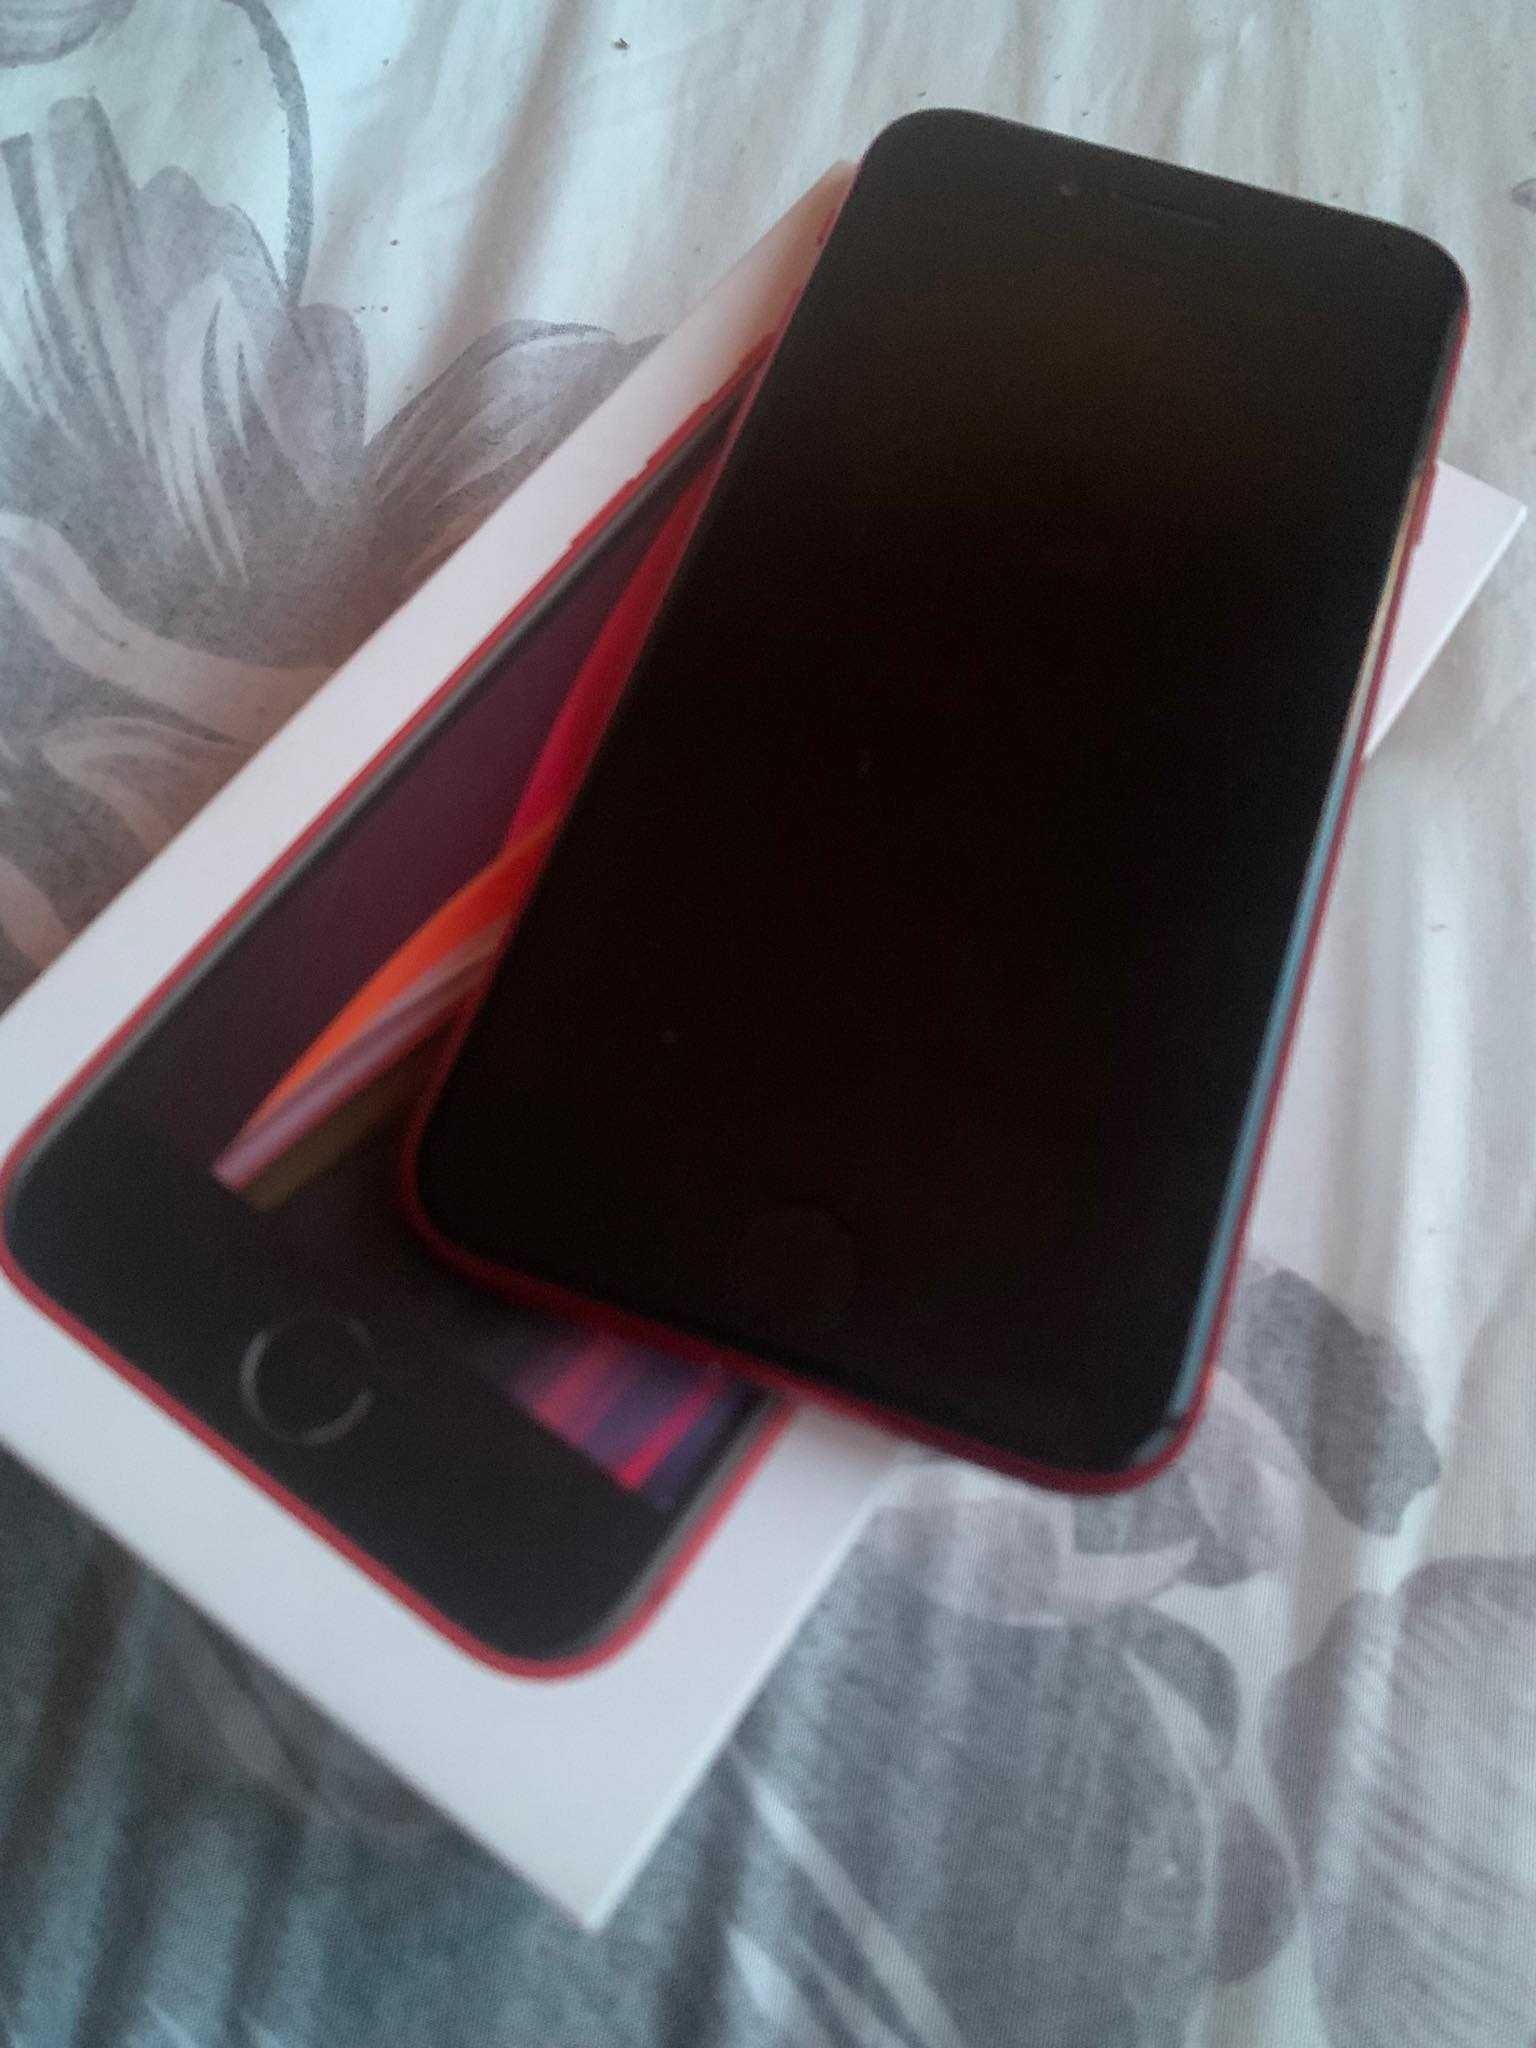 Iphone SE 2020 Червен цвят